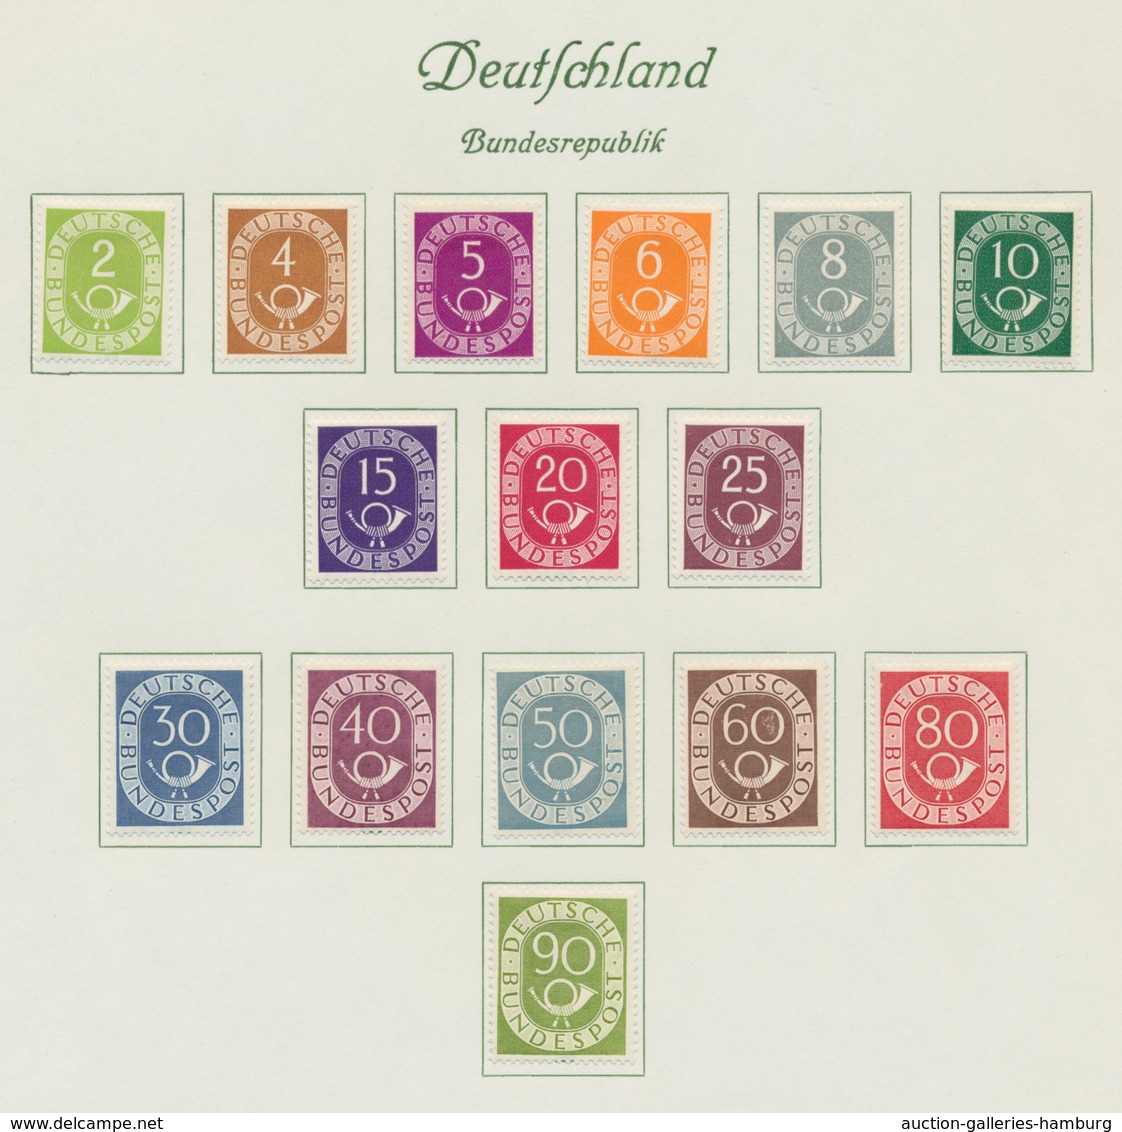 Deutschland: 1872-2003, reichhaltige Sammlung in 13 Vordruckalben mit u.a. Deutschem Reich ab Brusts